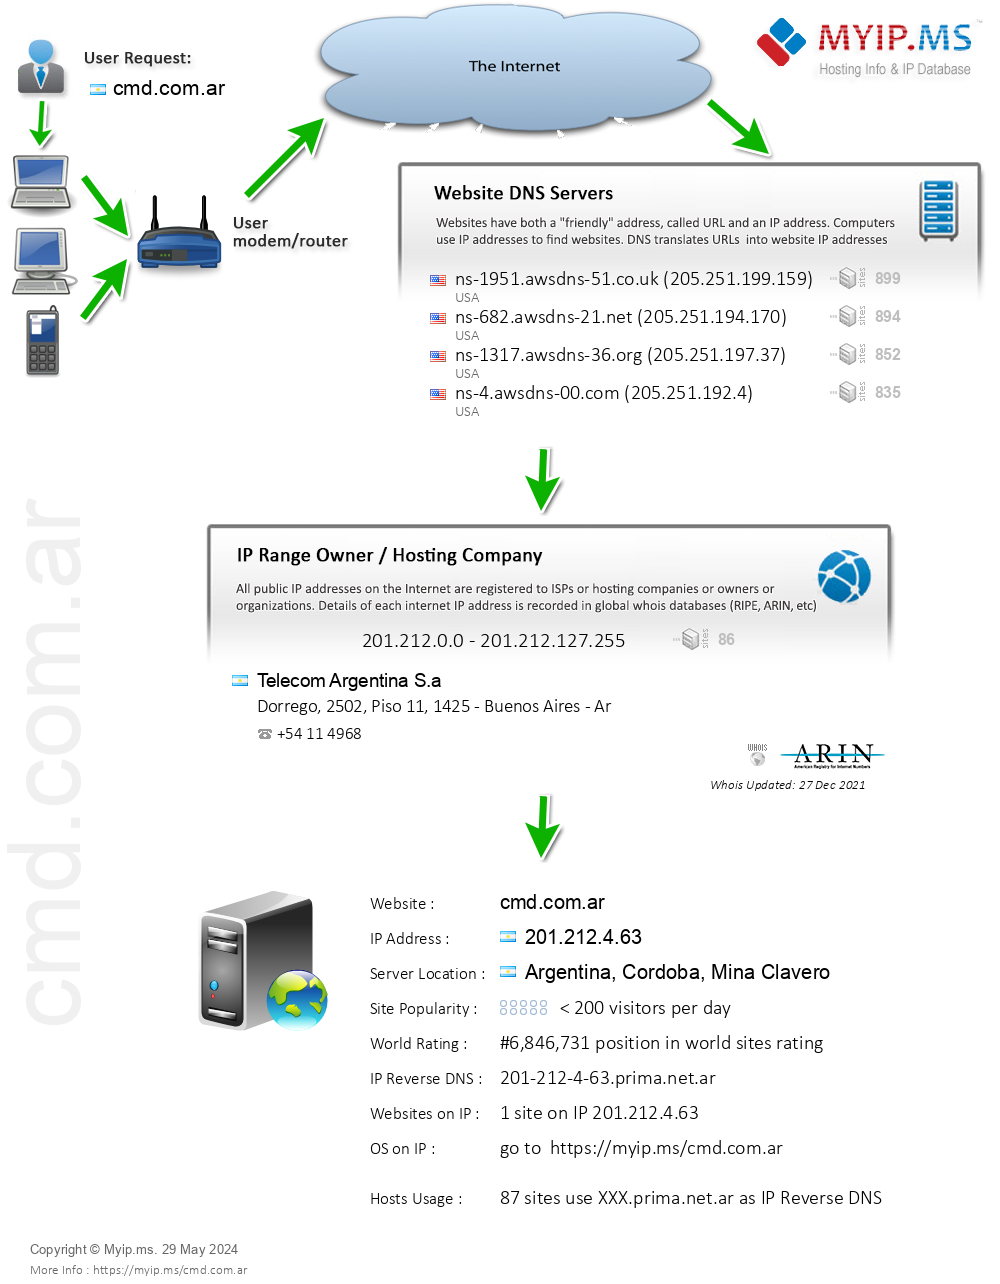 Cmd.com.ar - Website Hosting Visual IP Diagram